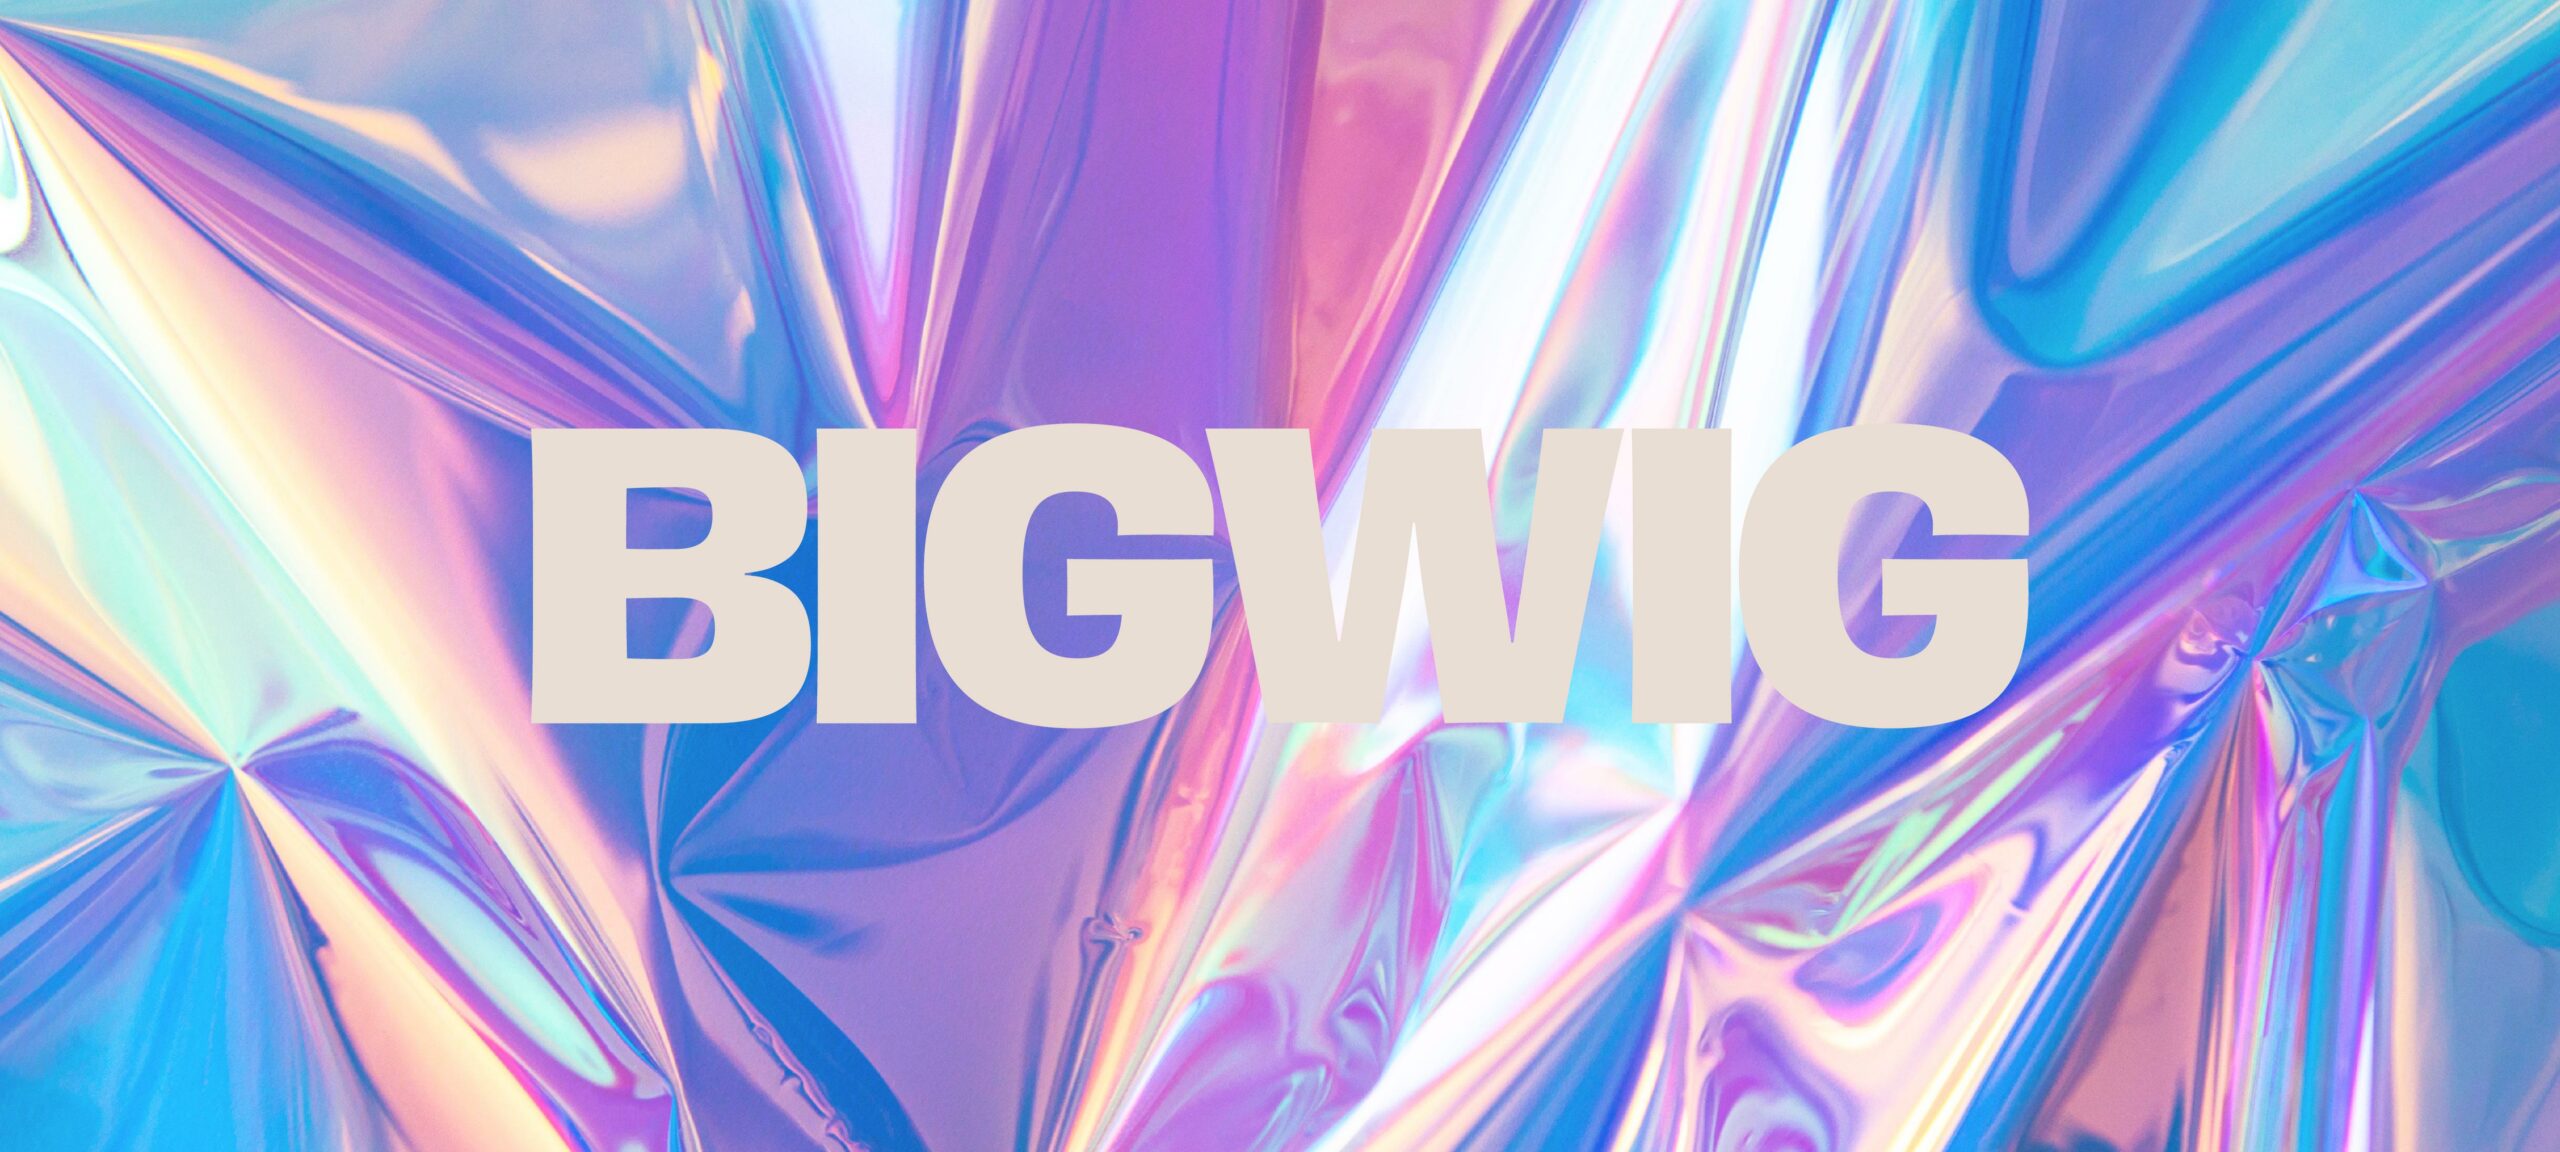 Bigwig-01